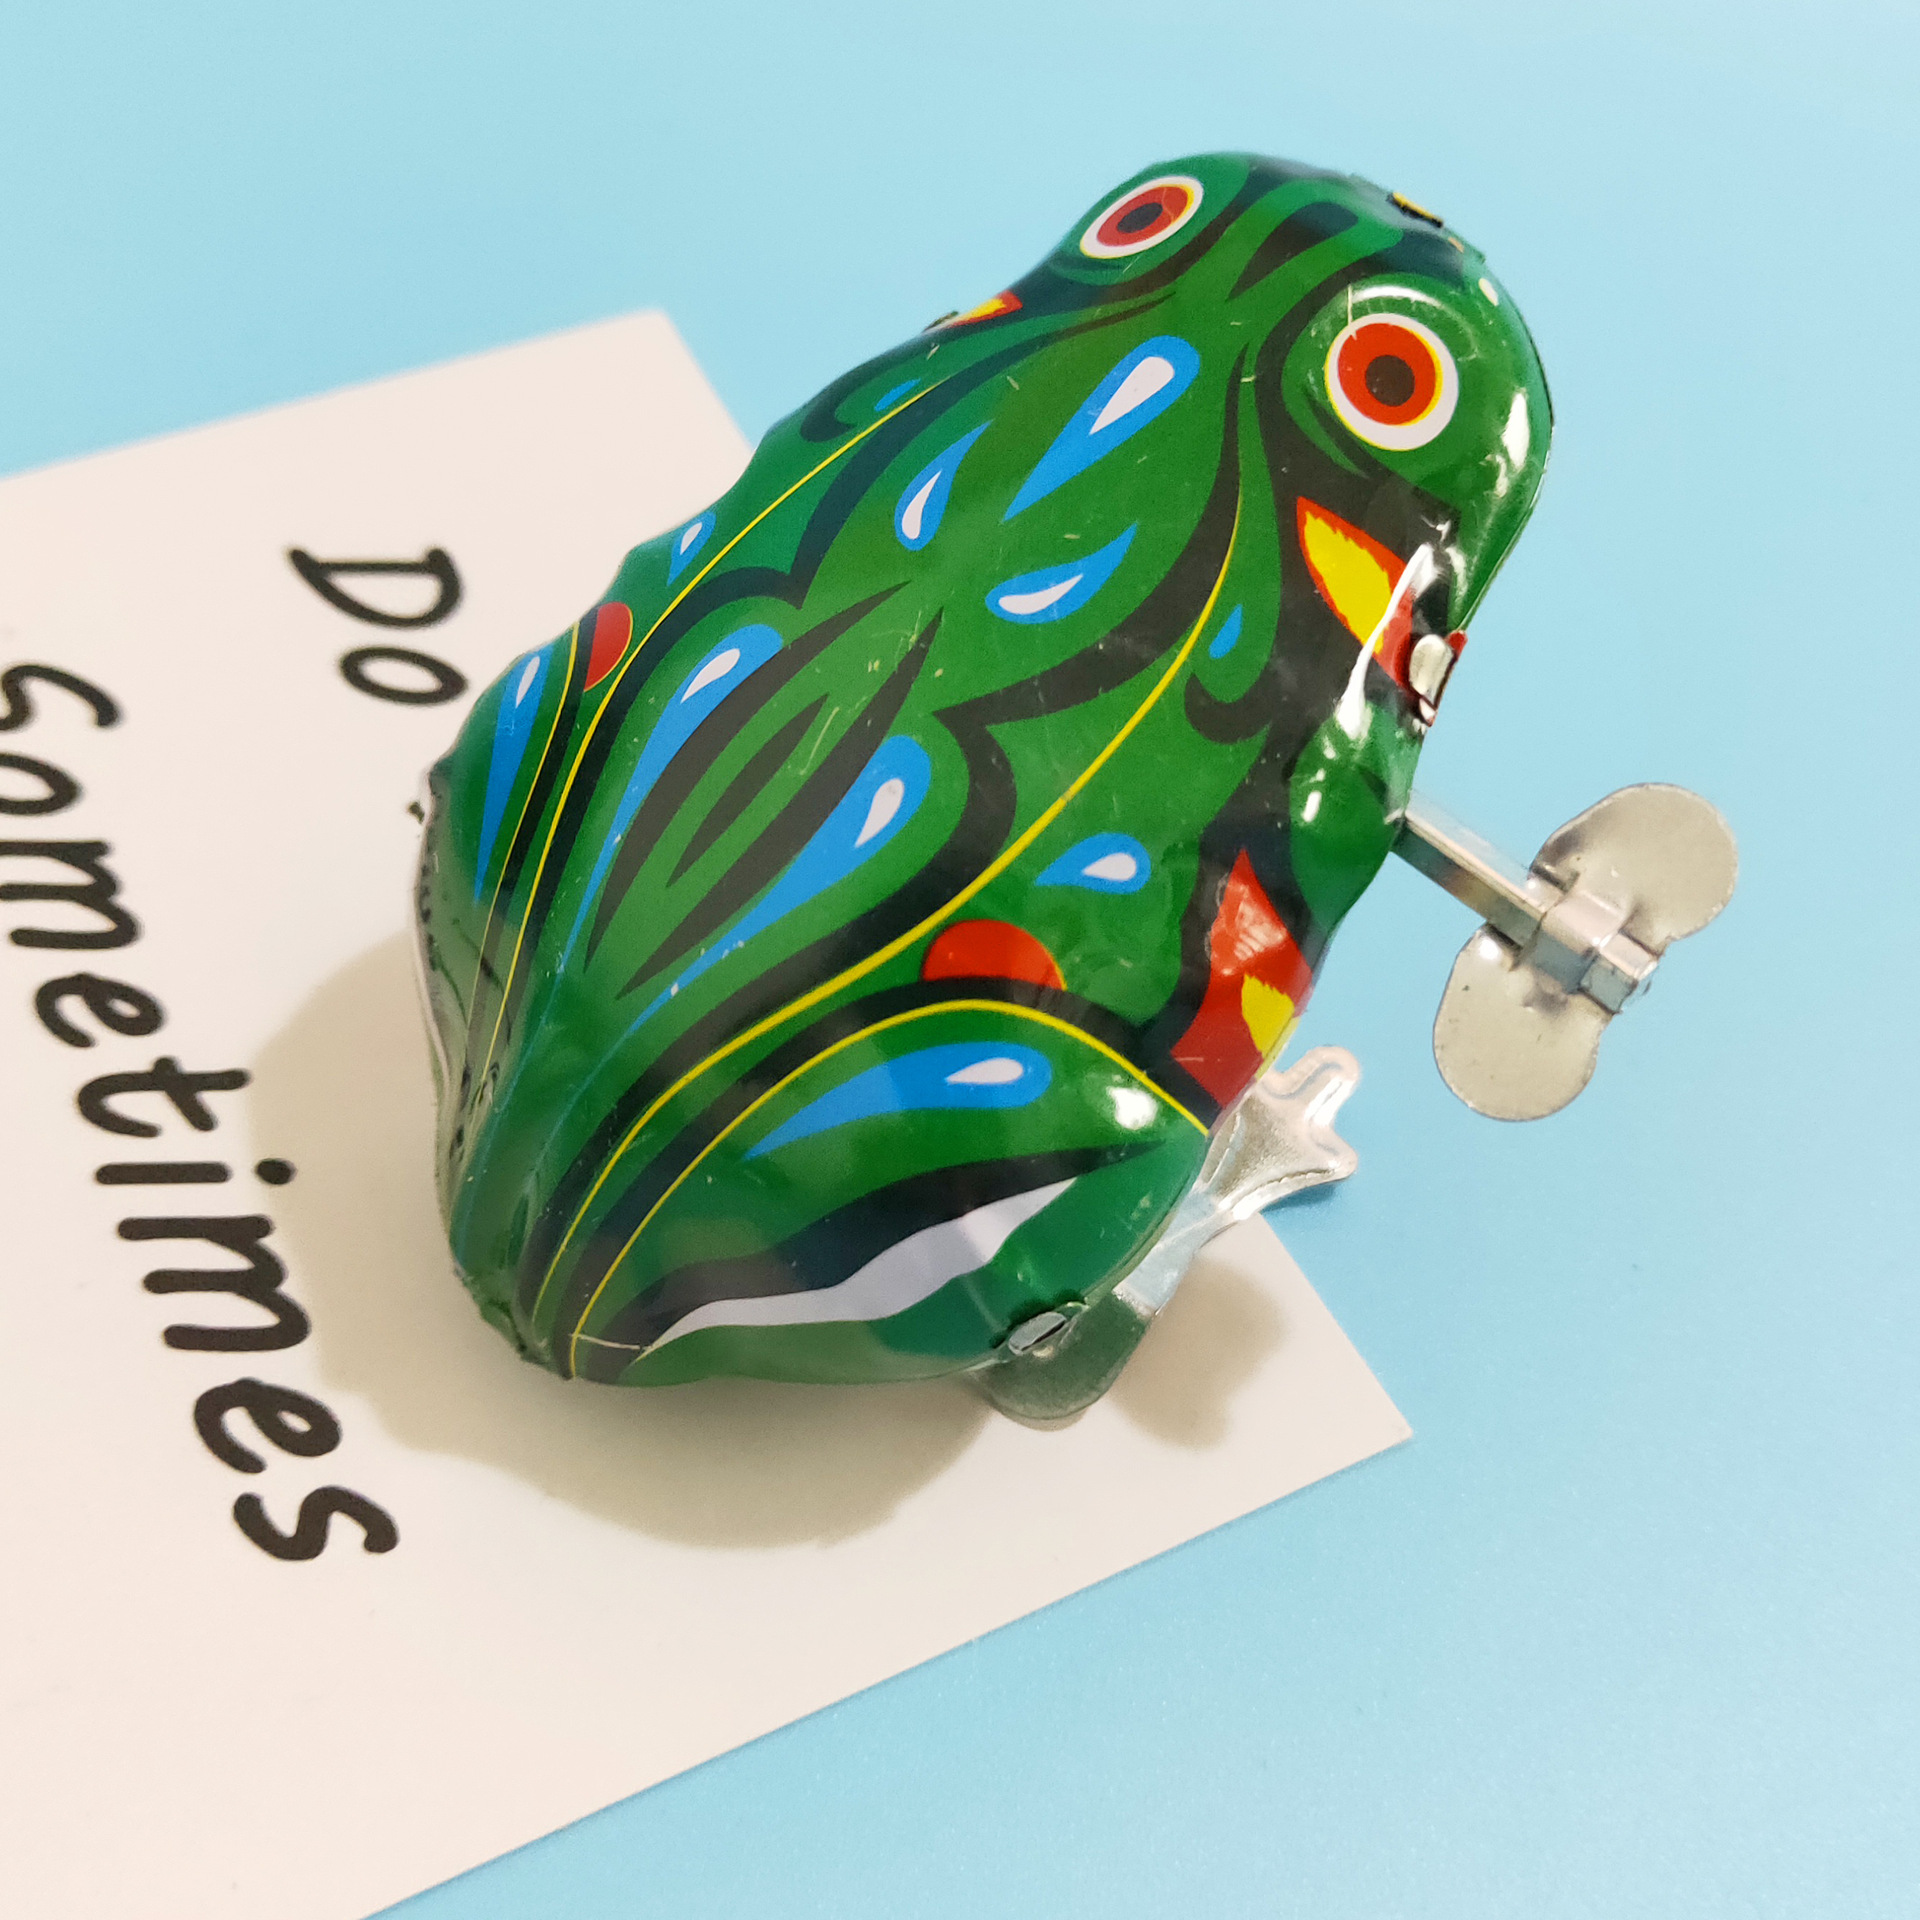 Железная лягушка: Железная лягушка скачать игру бесплатно полная версия на компьютер